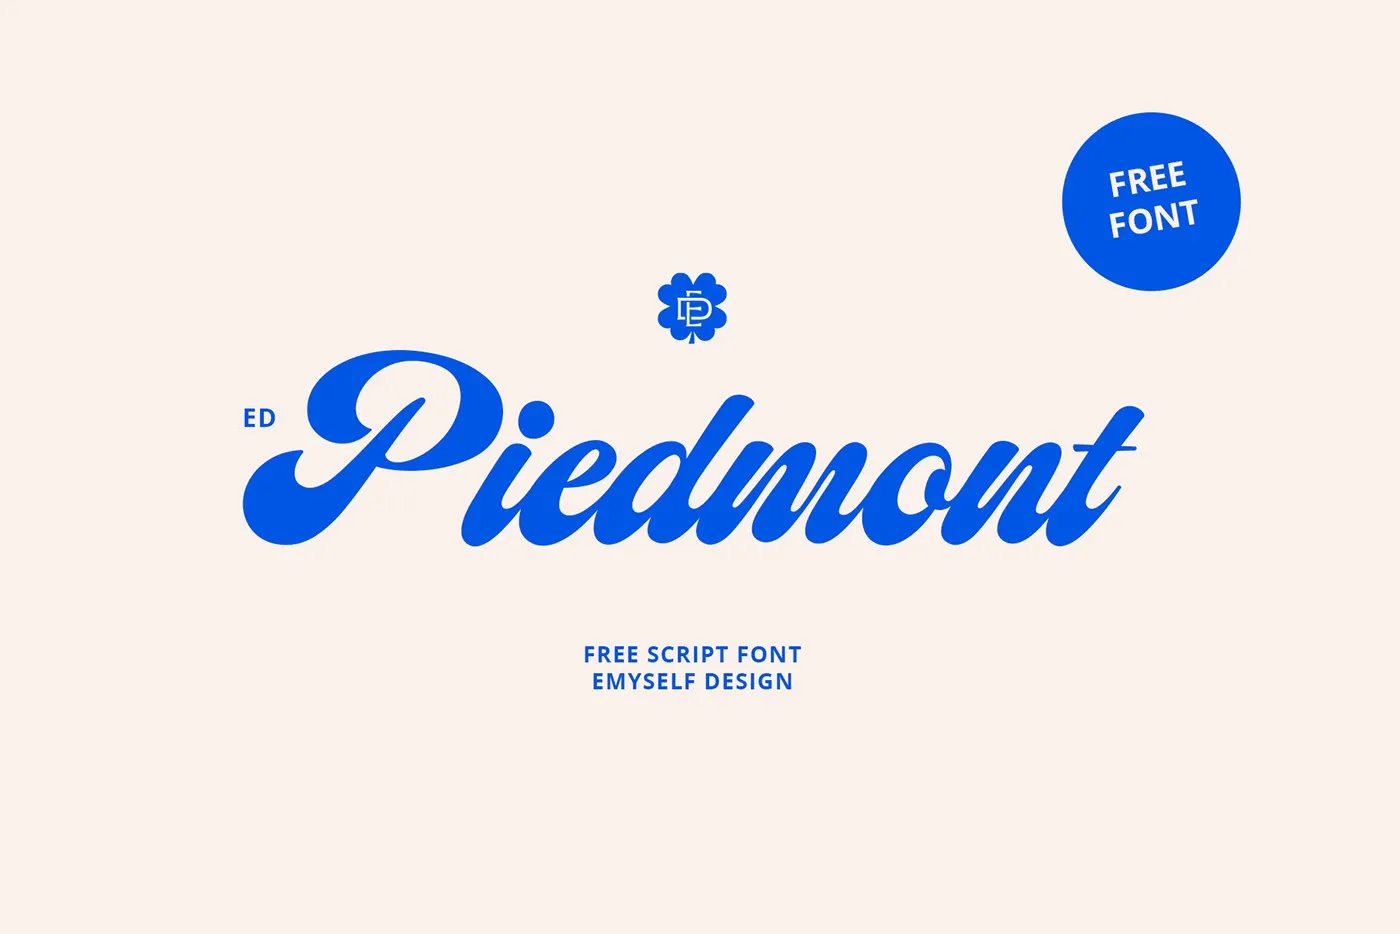 Шрифт ED Piedmont